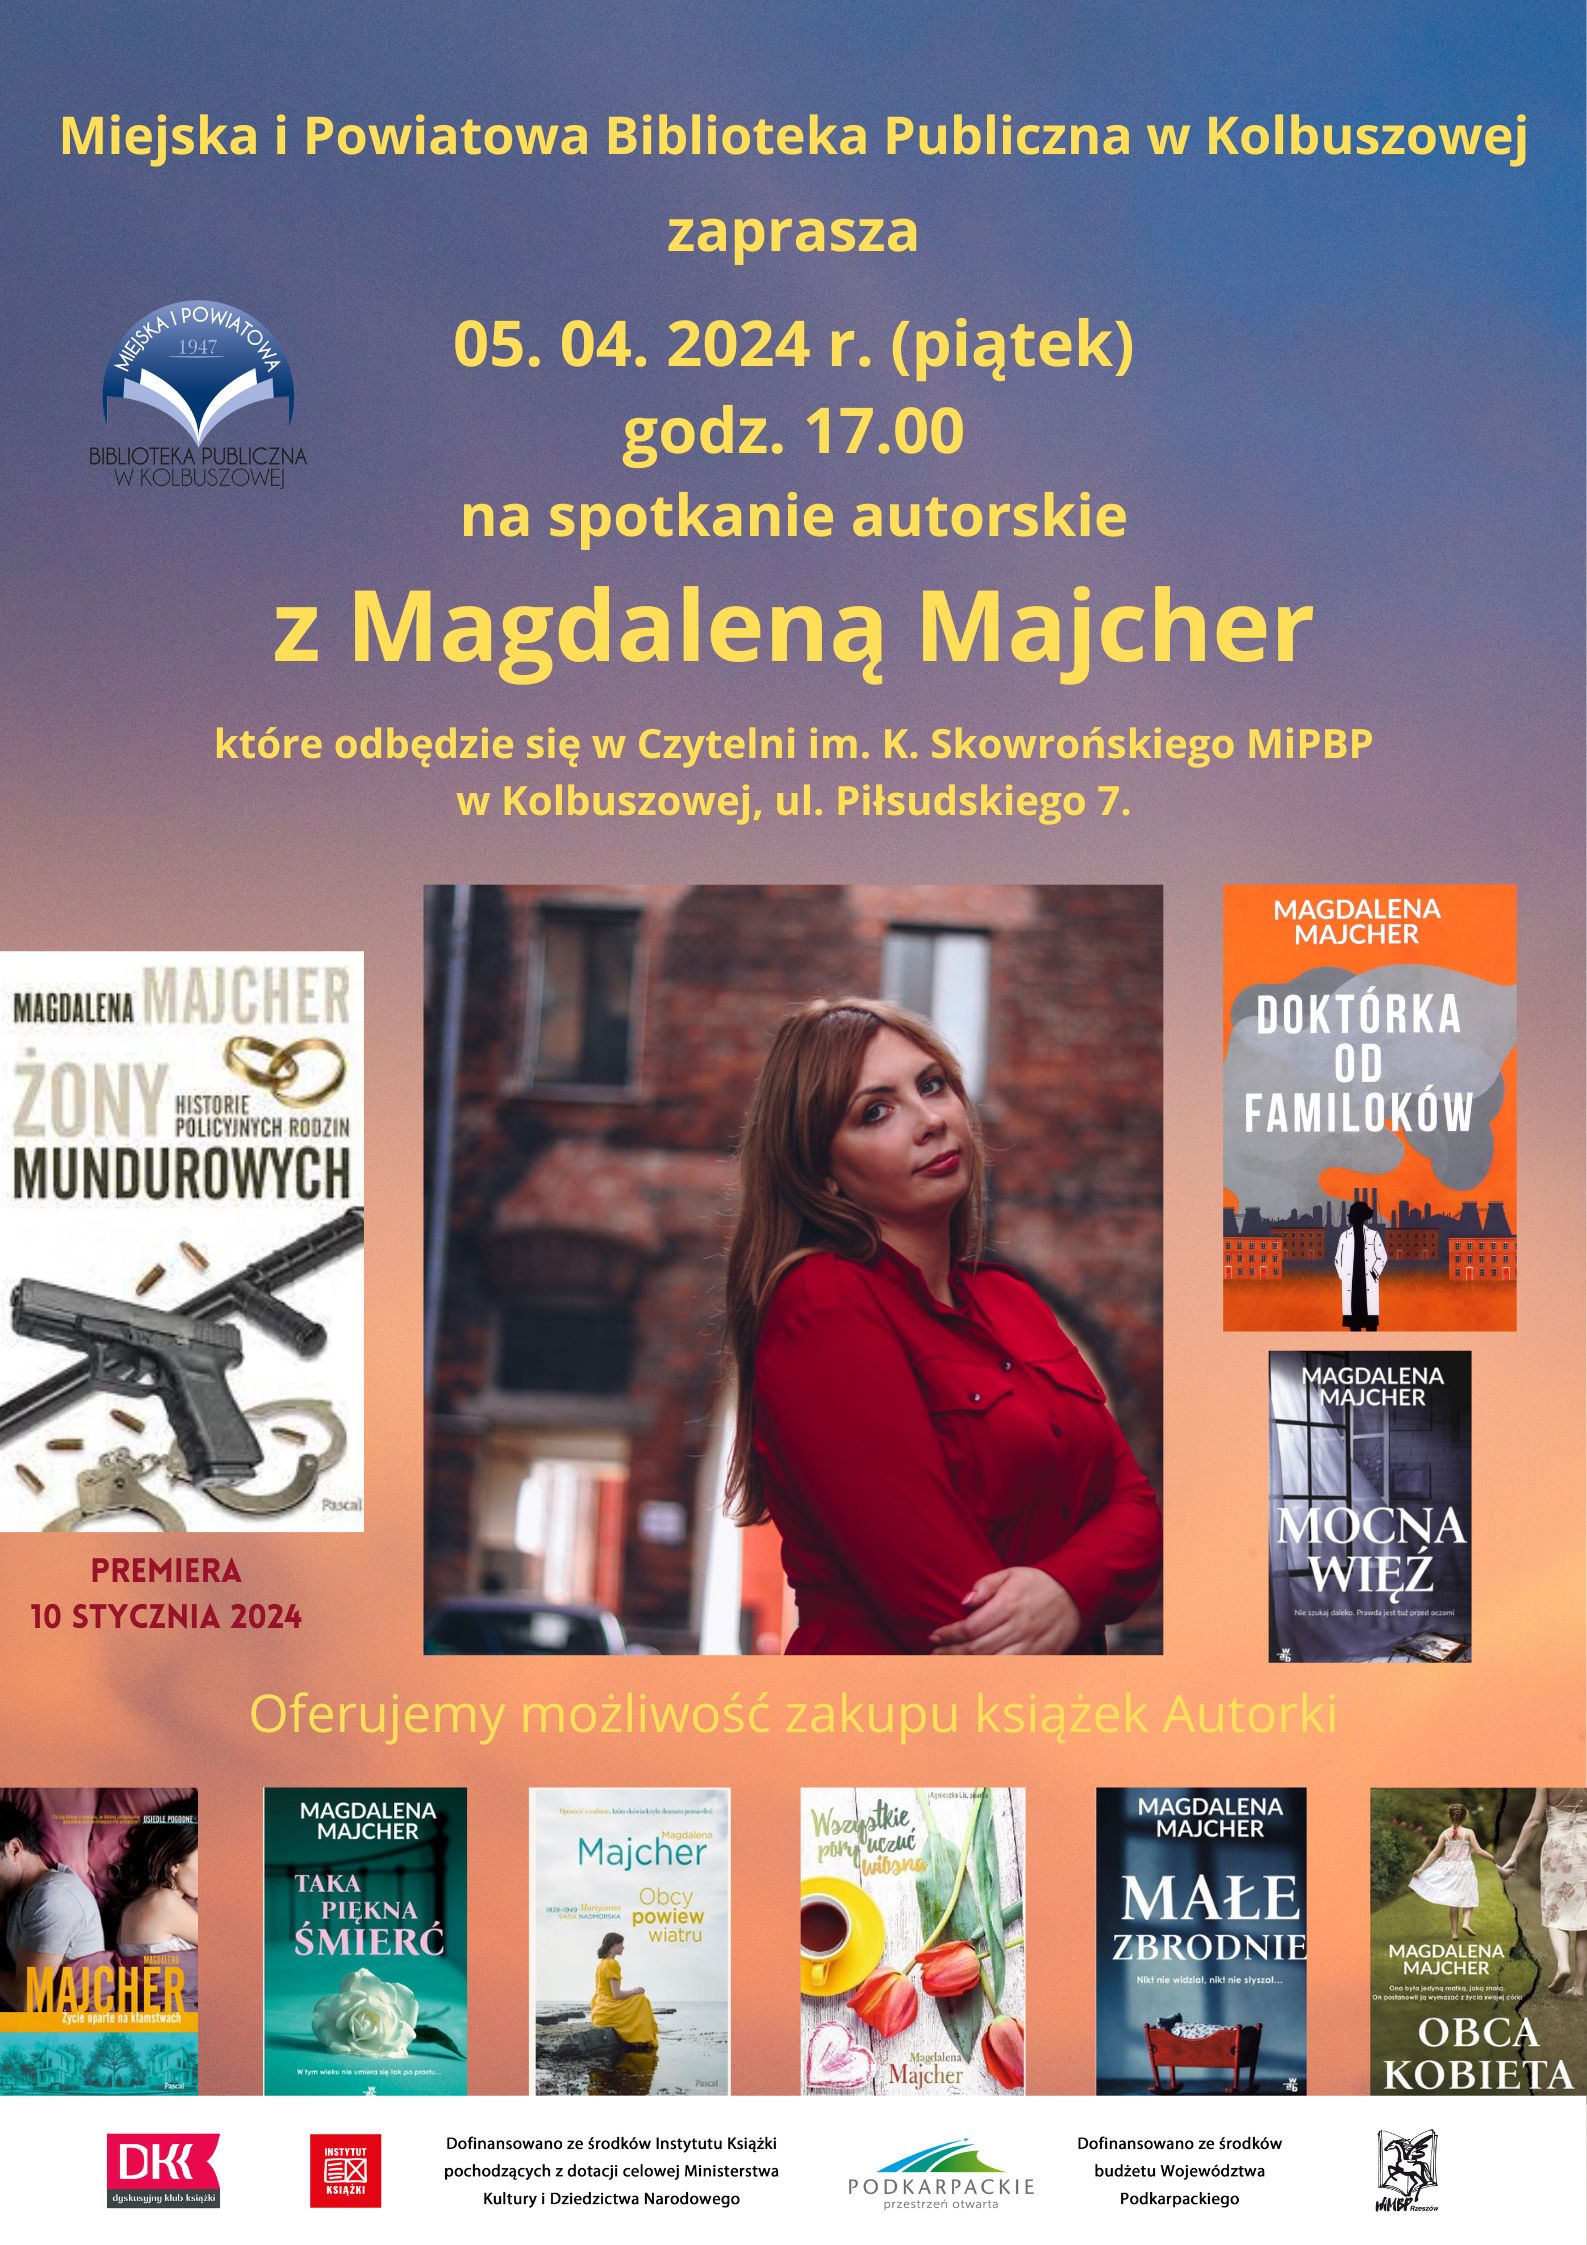 Spotkanie autorskie z Magdaleną Majcher